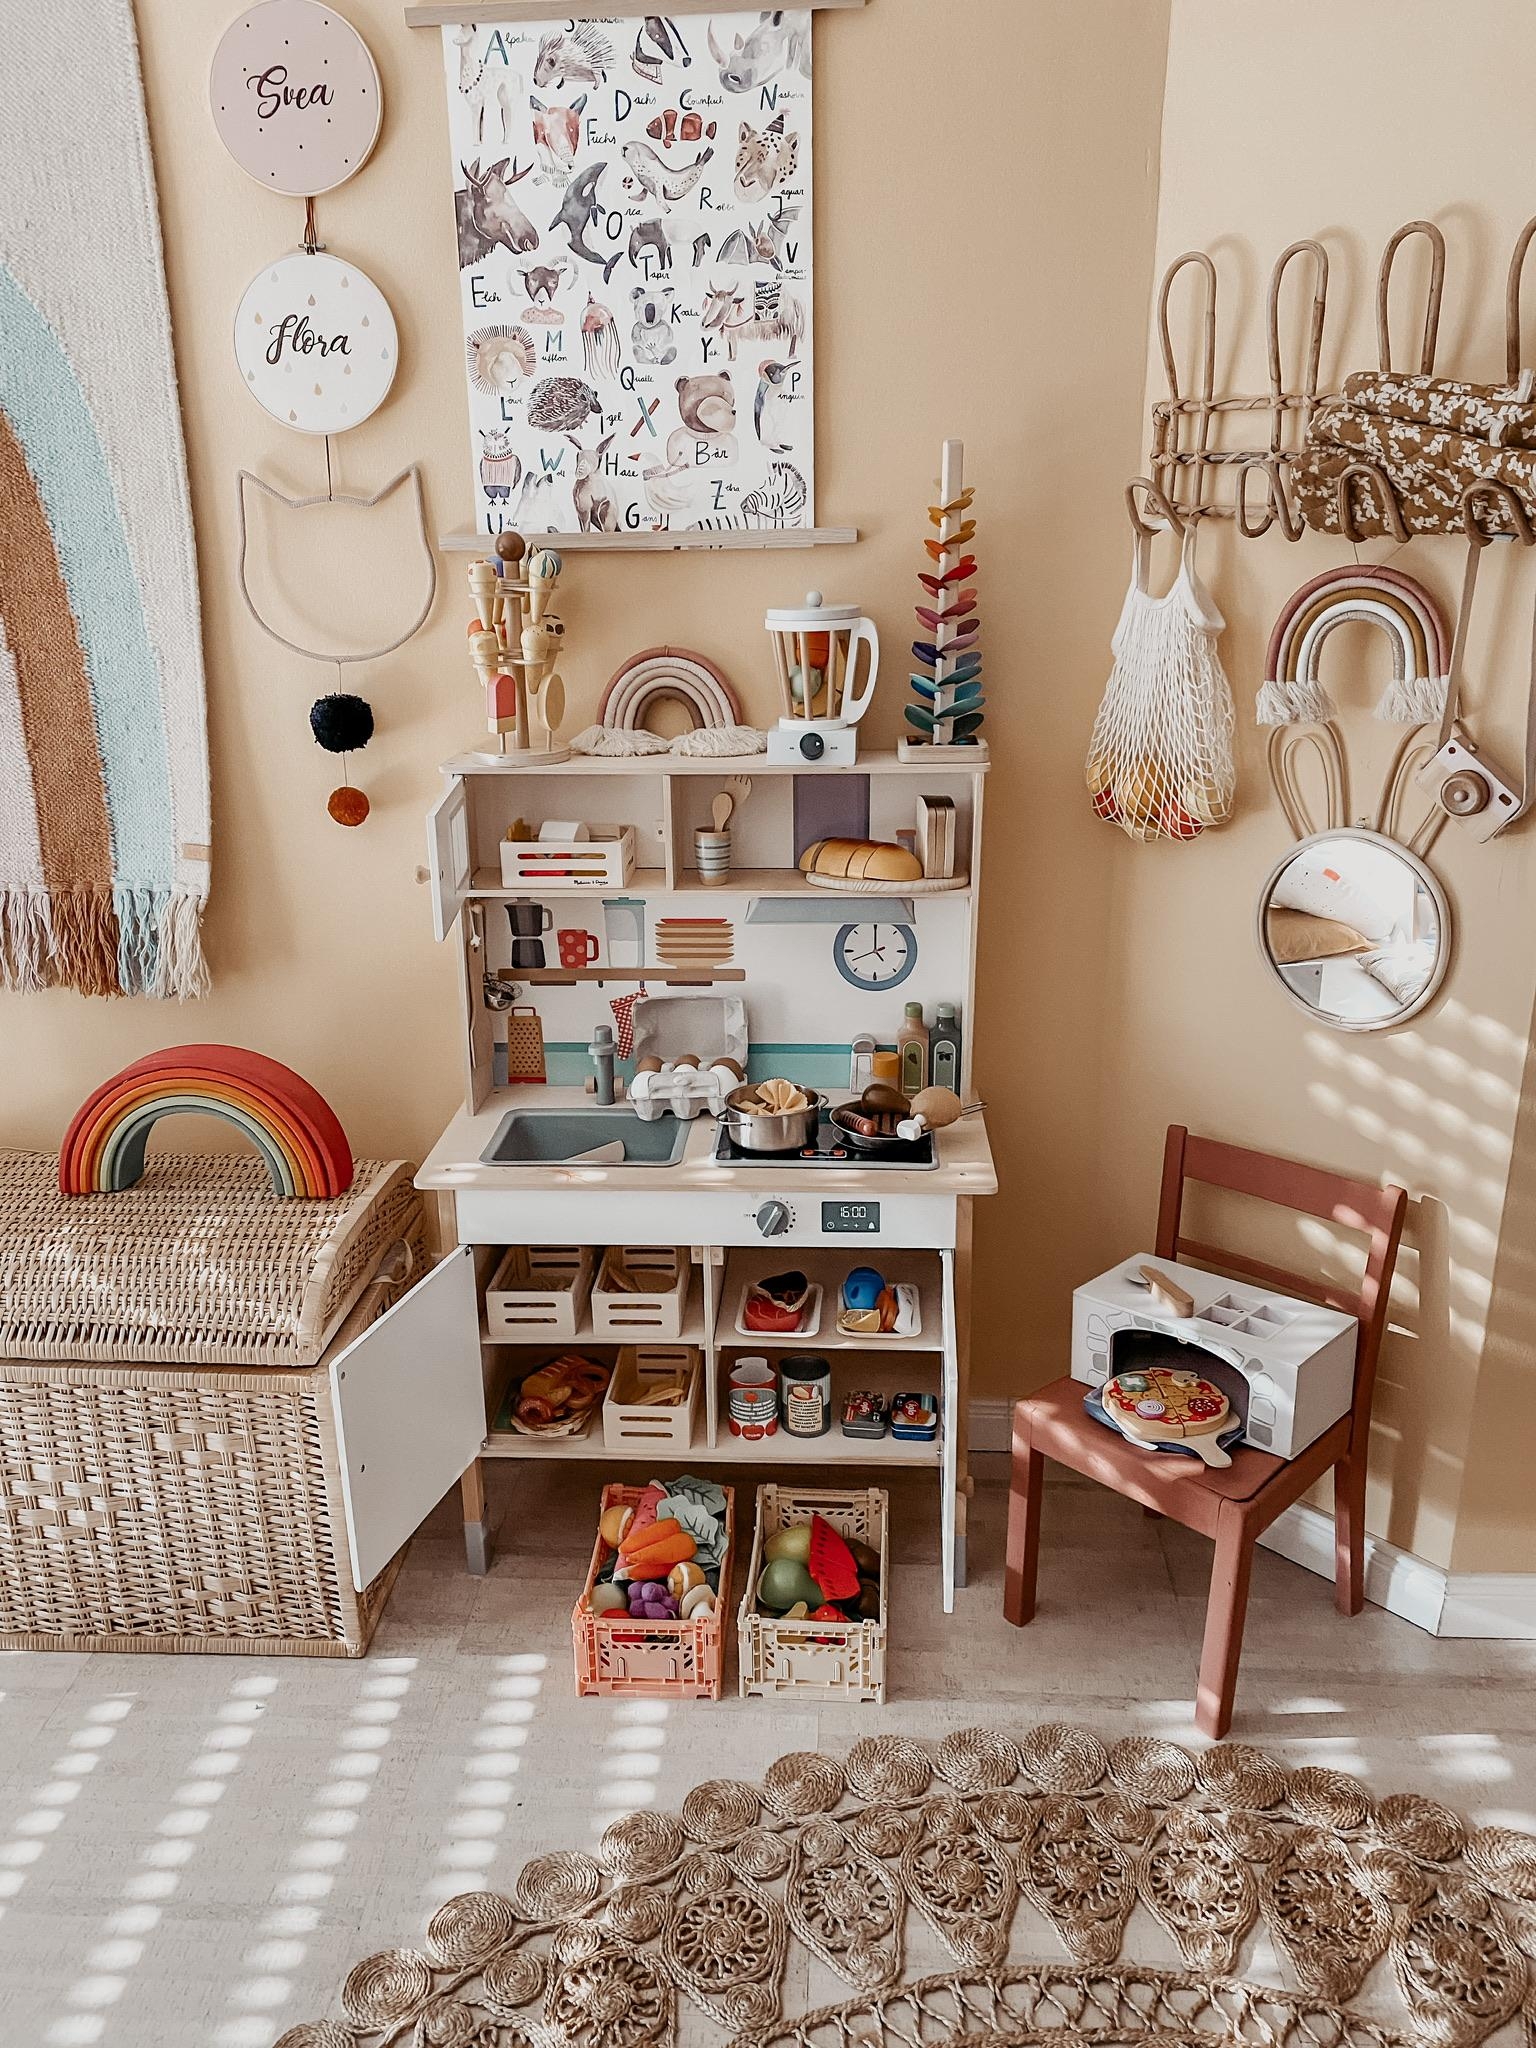 Kinderzimmer trifft auf Naturmaterialien. Große Rattan und Holzliebe. #detailverliebt #kinderzimmer #couchstyle